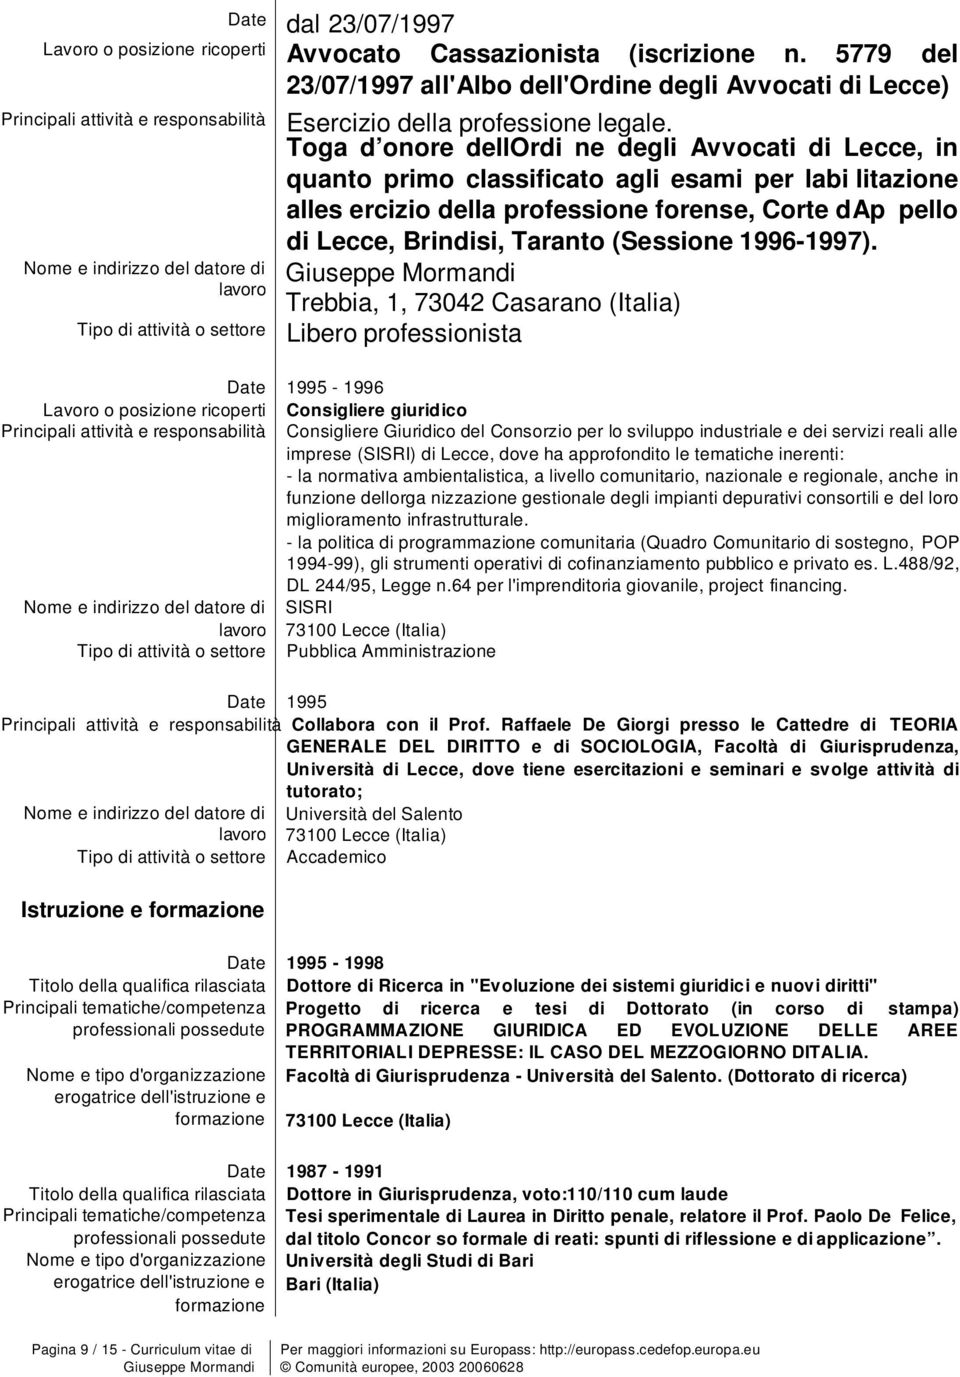 Tga d nre dellordi ne degli Avvcati di Lecce, in quant prim classificat agli esami per labi litazine alles ercizi della prfessine frense, Crte dap pell di Lecce, Brindisi, Tarant (Sessine 1996-1997).